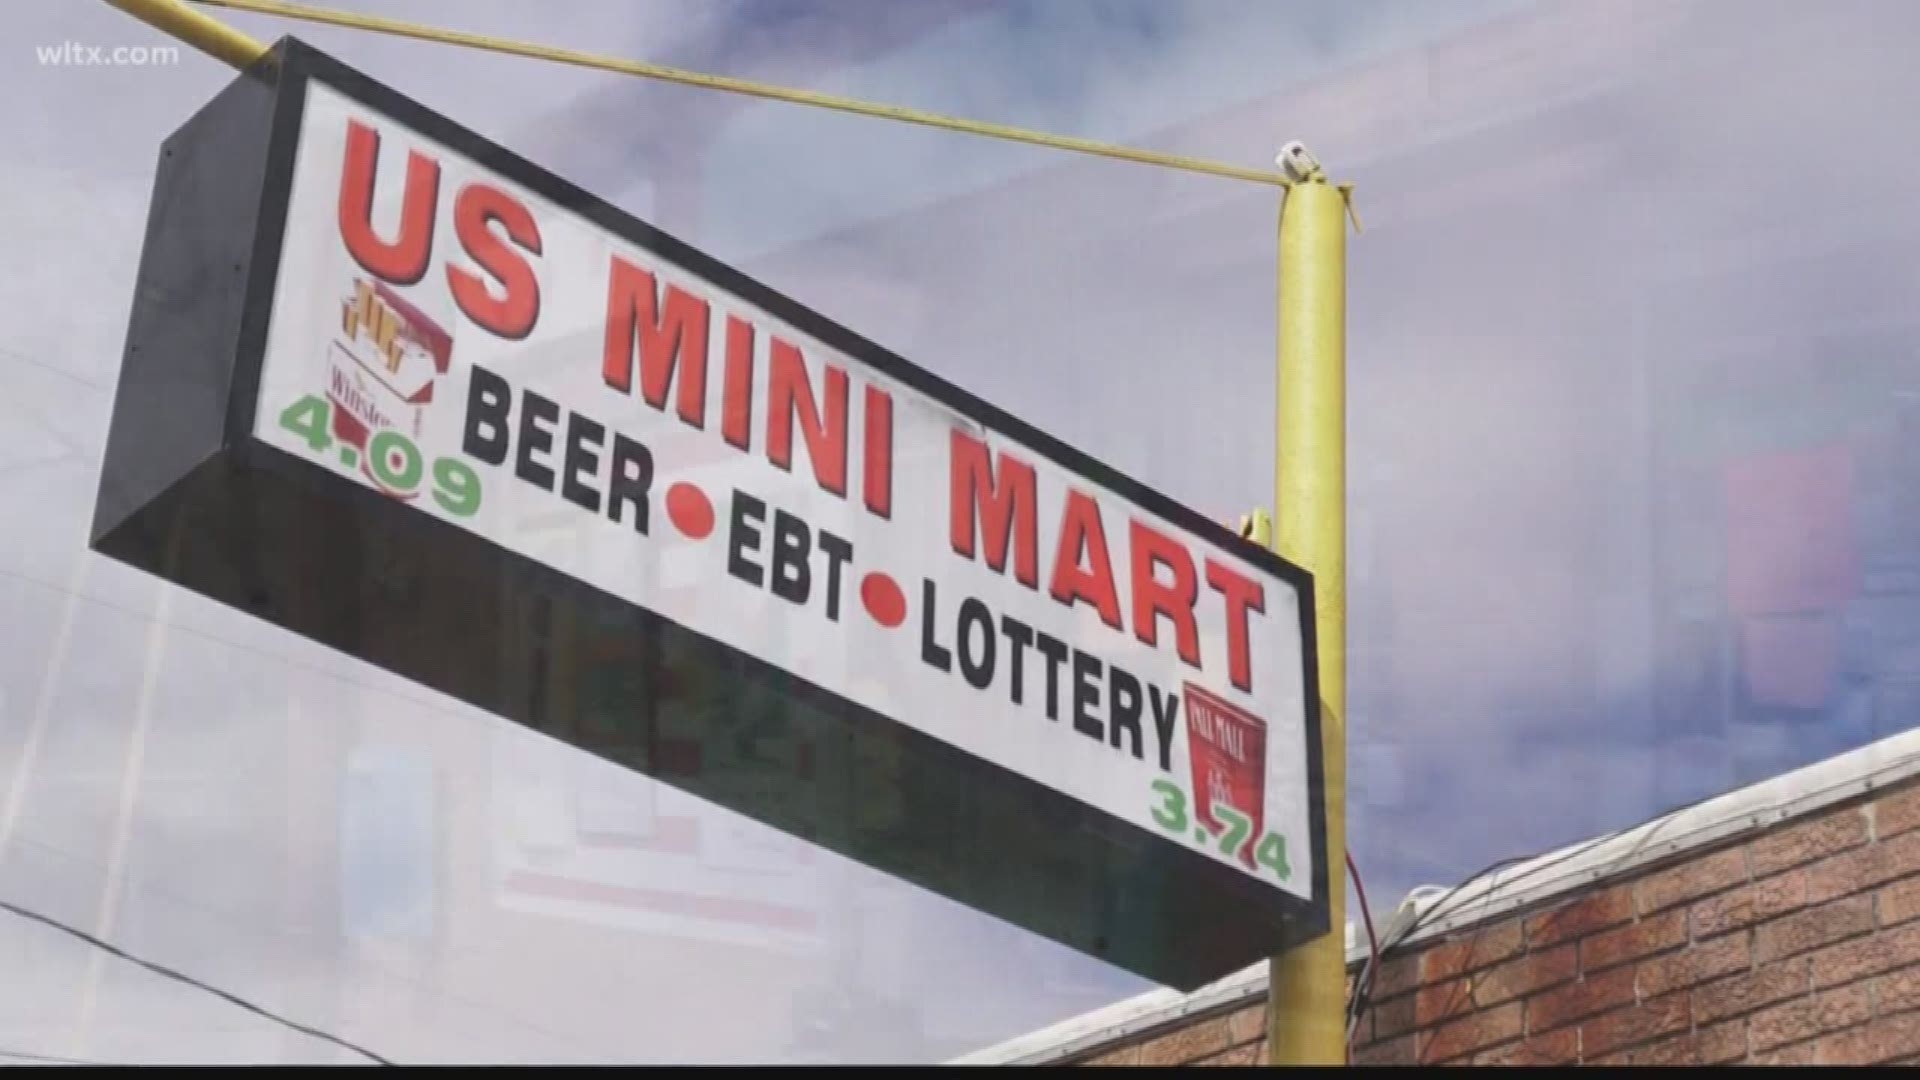 The crime happened at the U.S. Mini Mart on Platt Springs Road.